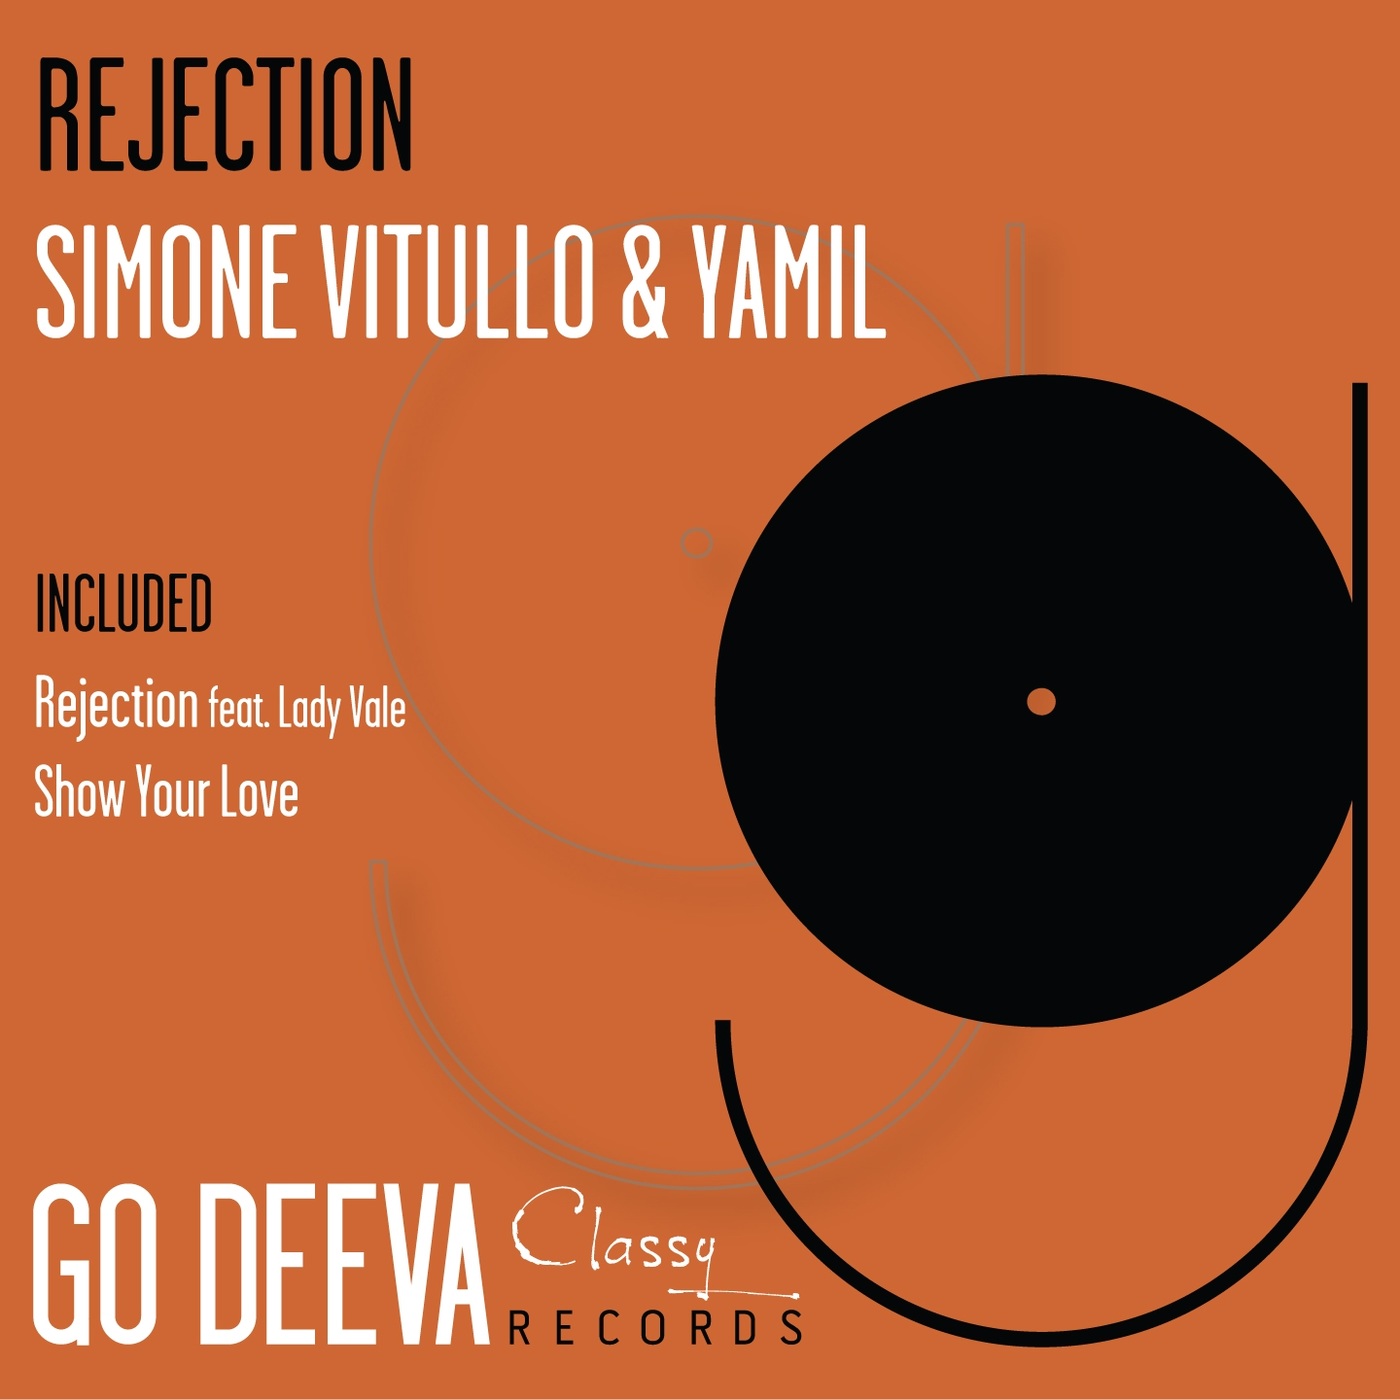 Simone Vitullo - Rejection / Go Deeva Records